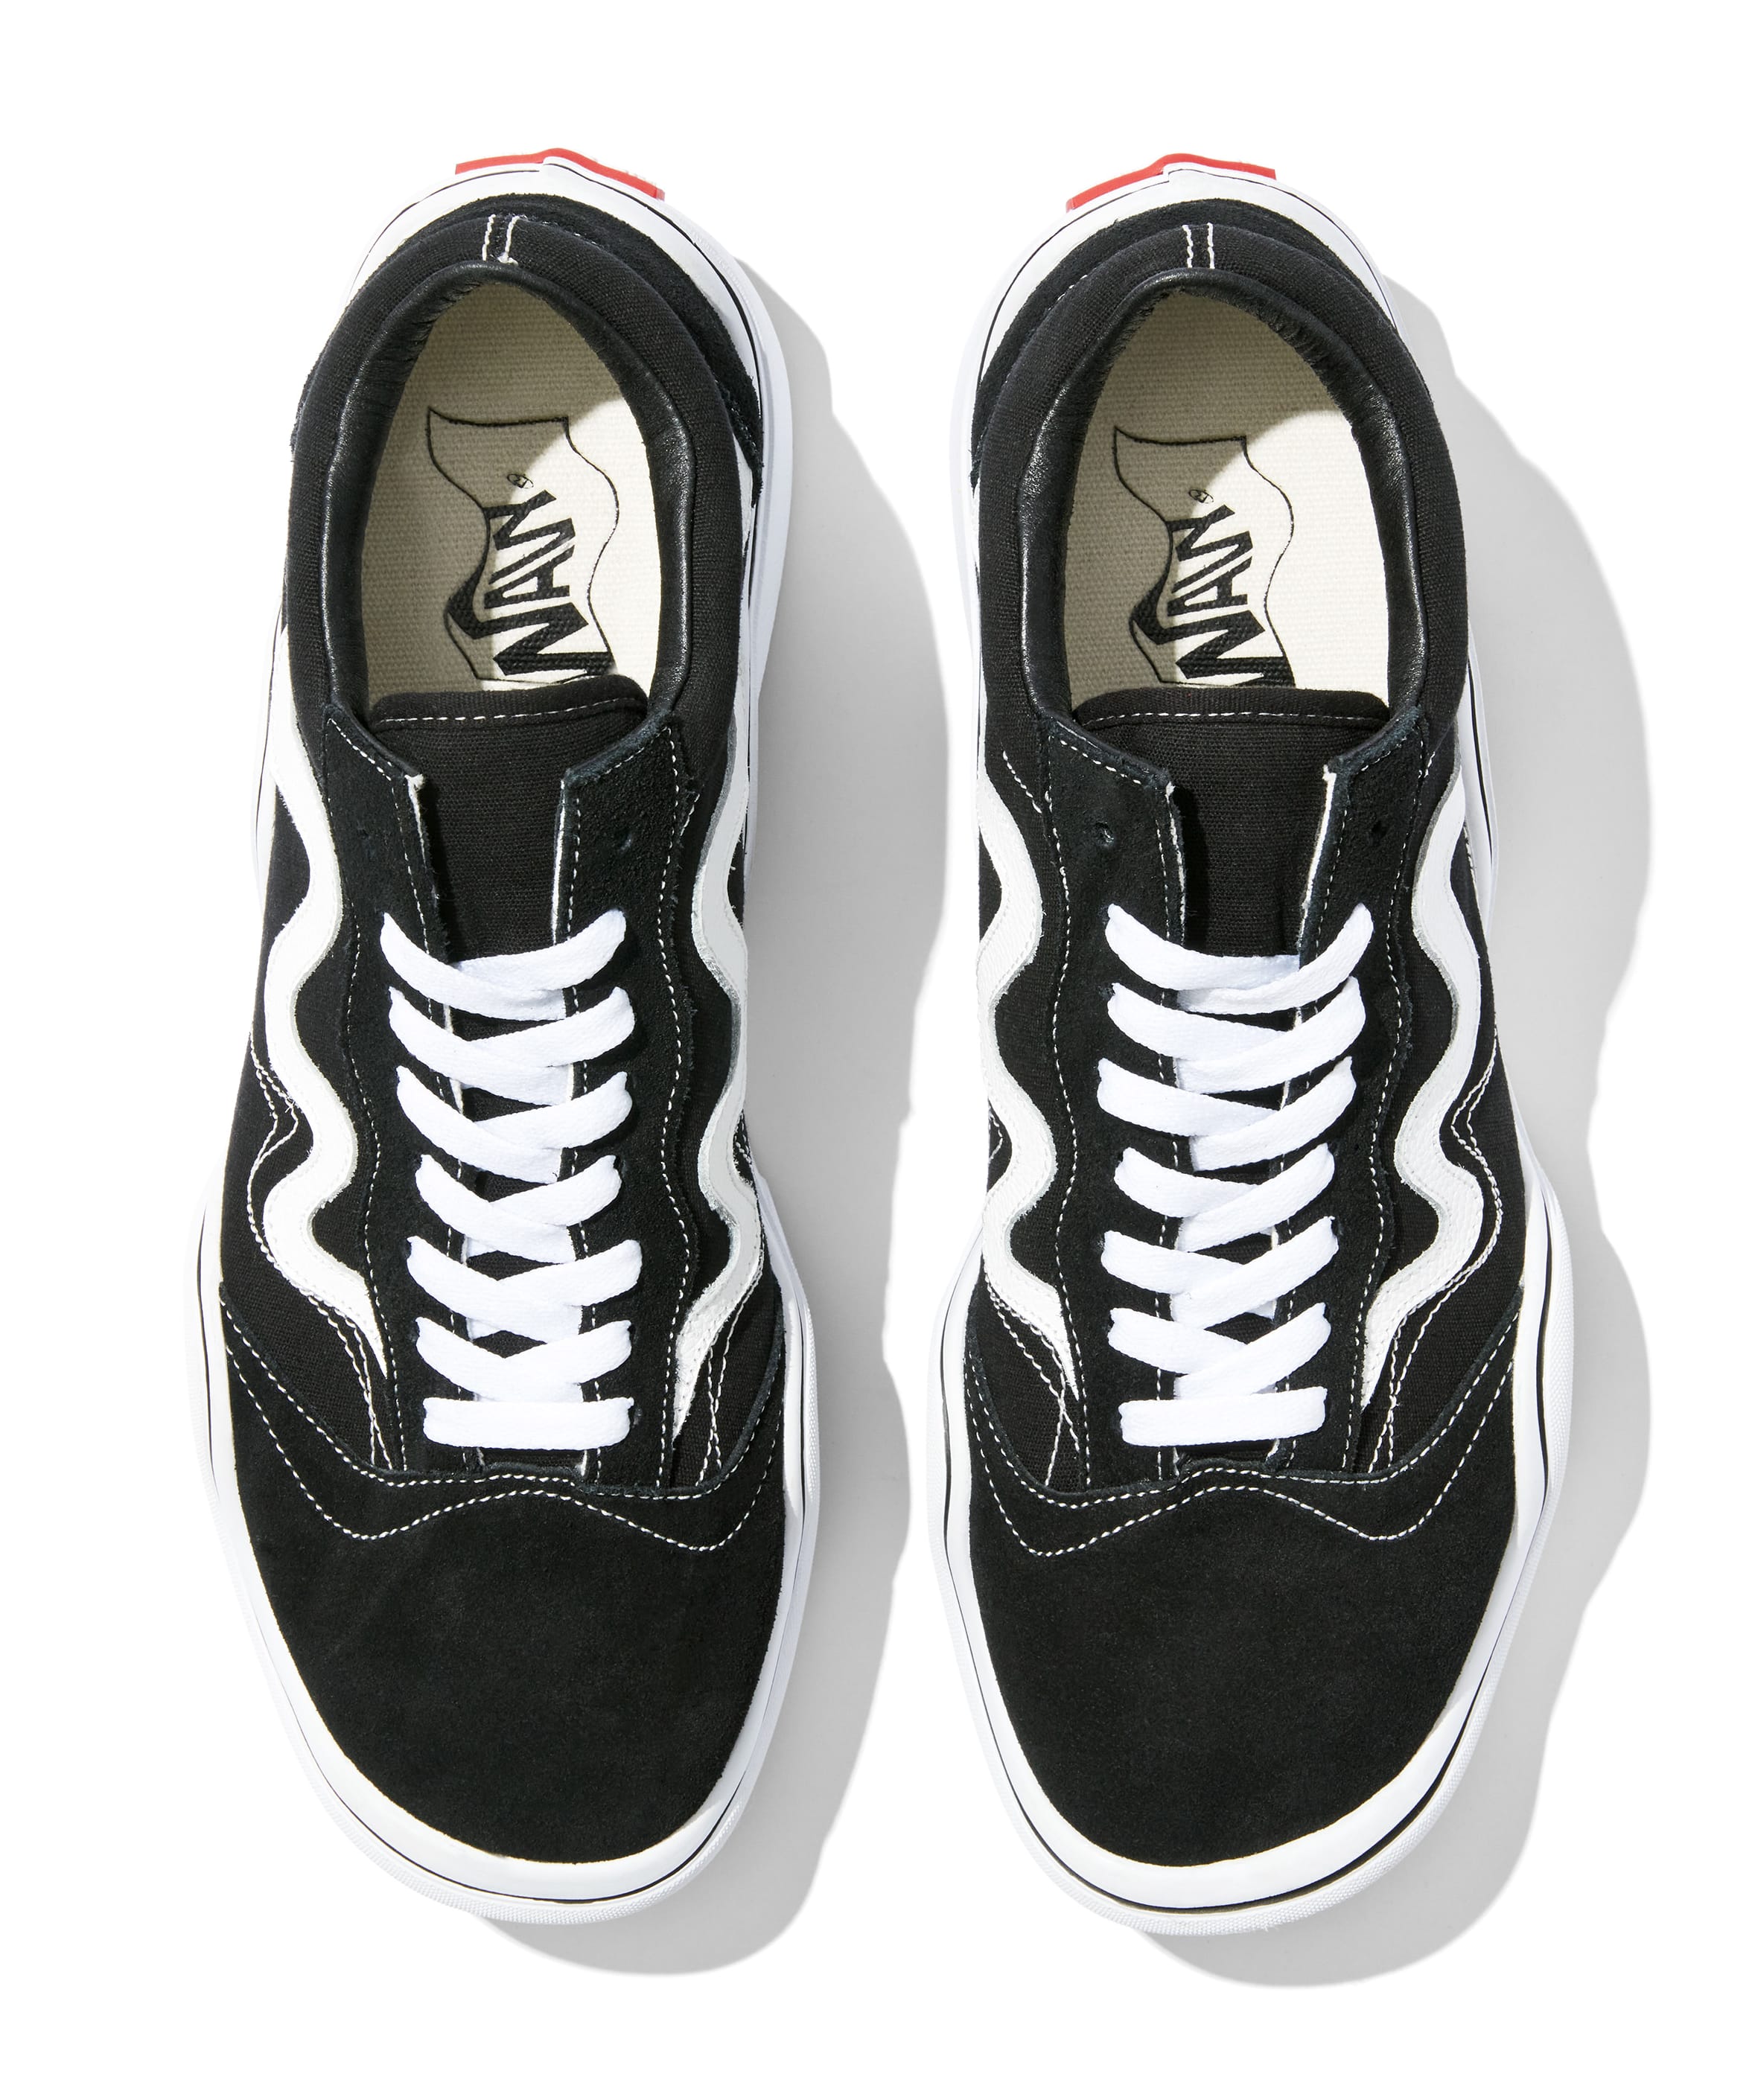 Tyga x MSCHF Wavy Baby Sneaker Release Date April 2022 | Sole 